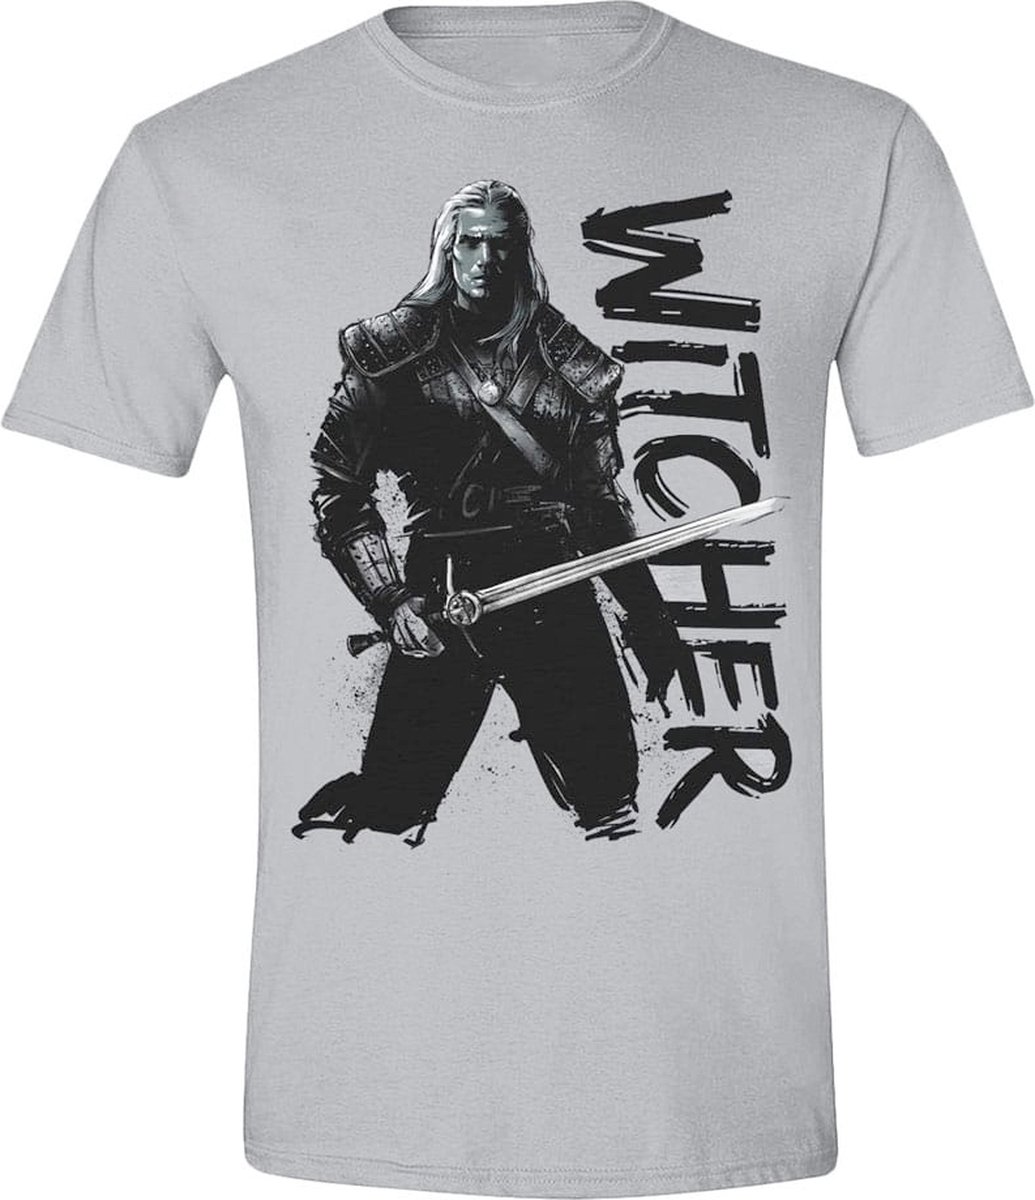 PCMerch The Witcher - Sketch Heren T-shirt - XL - Grijs